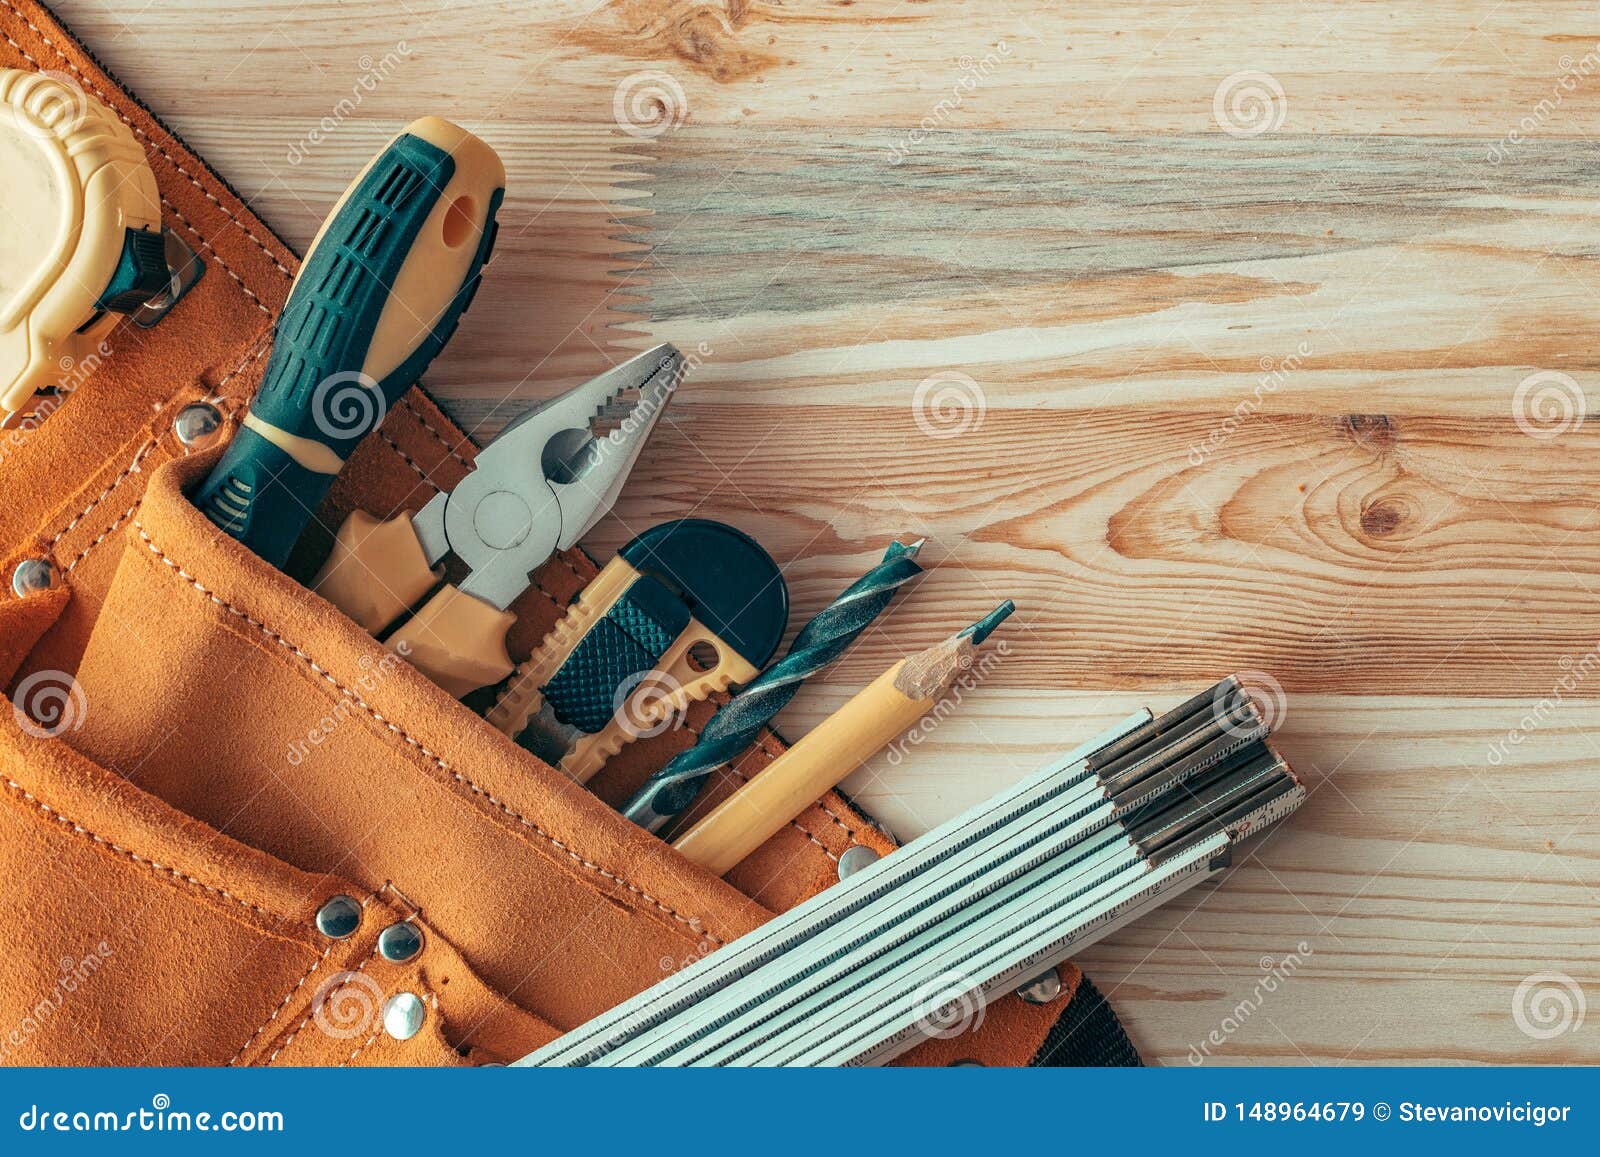 carpentry tool belt on woodwork workshop desk, top view